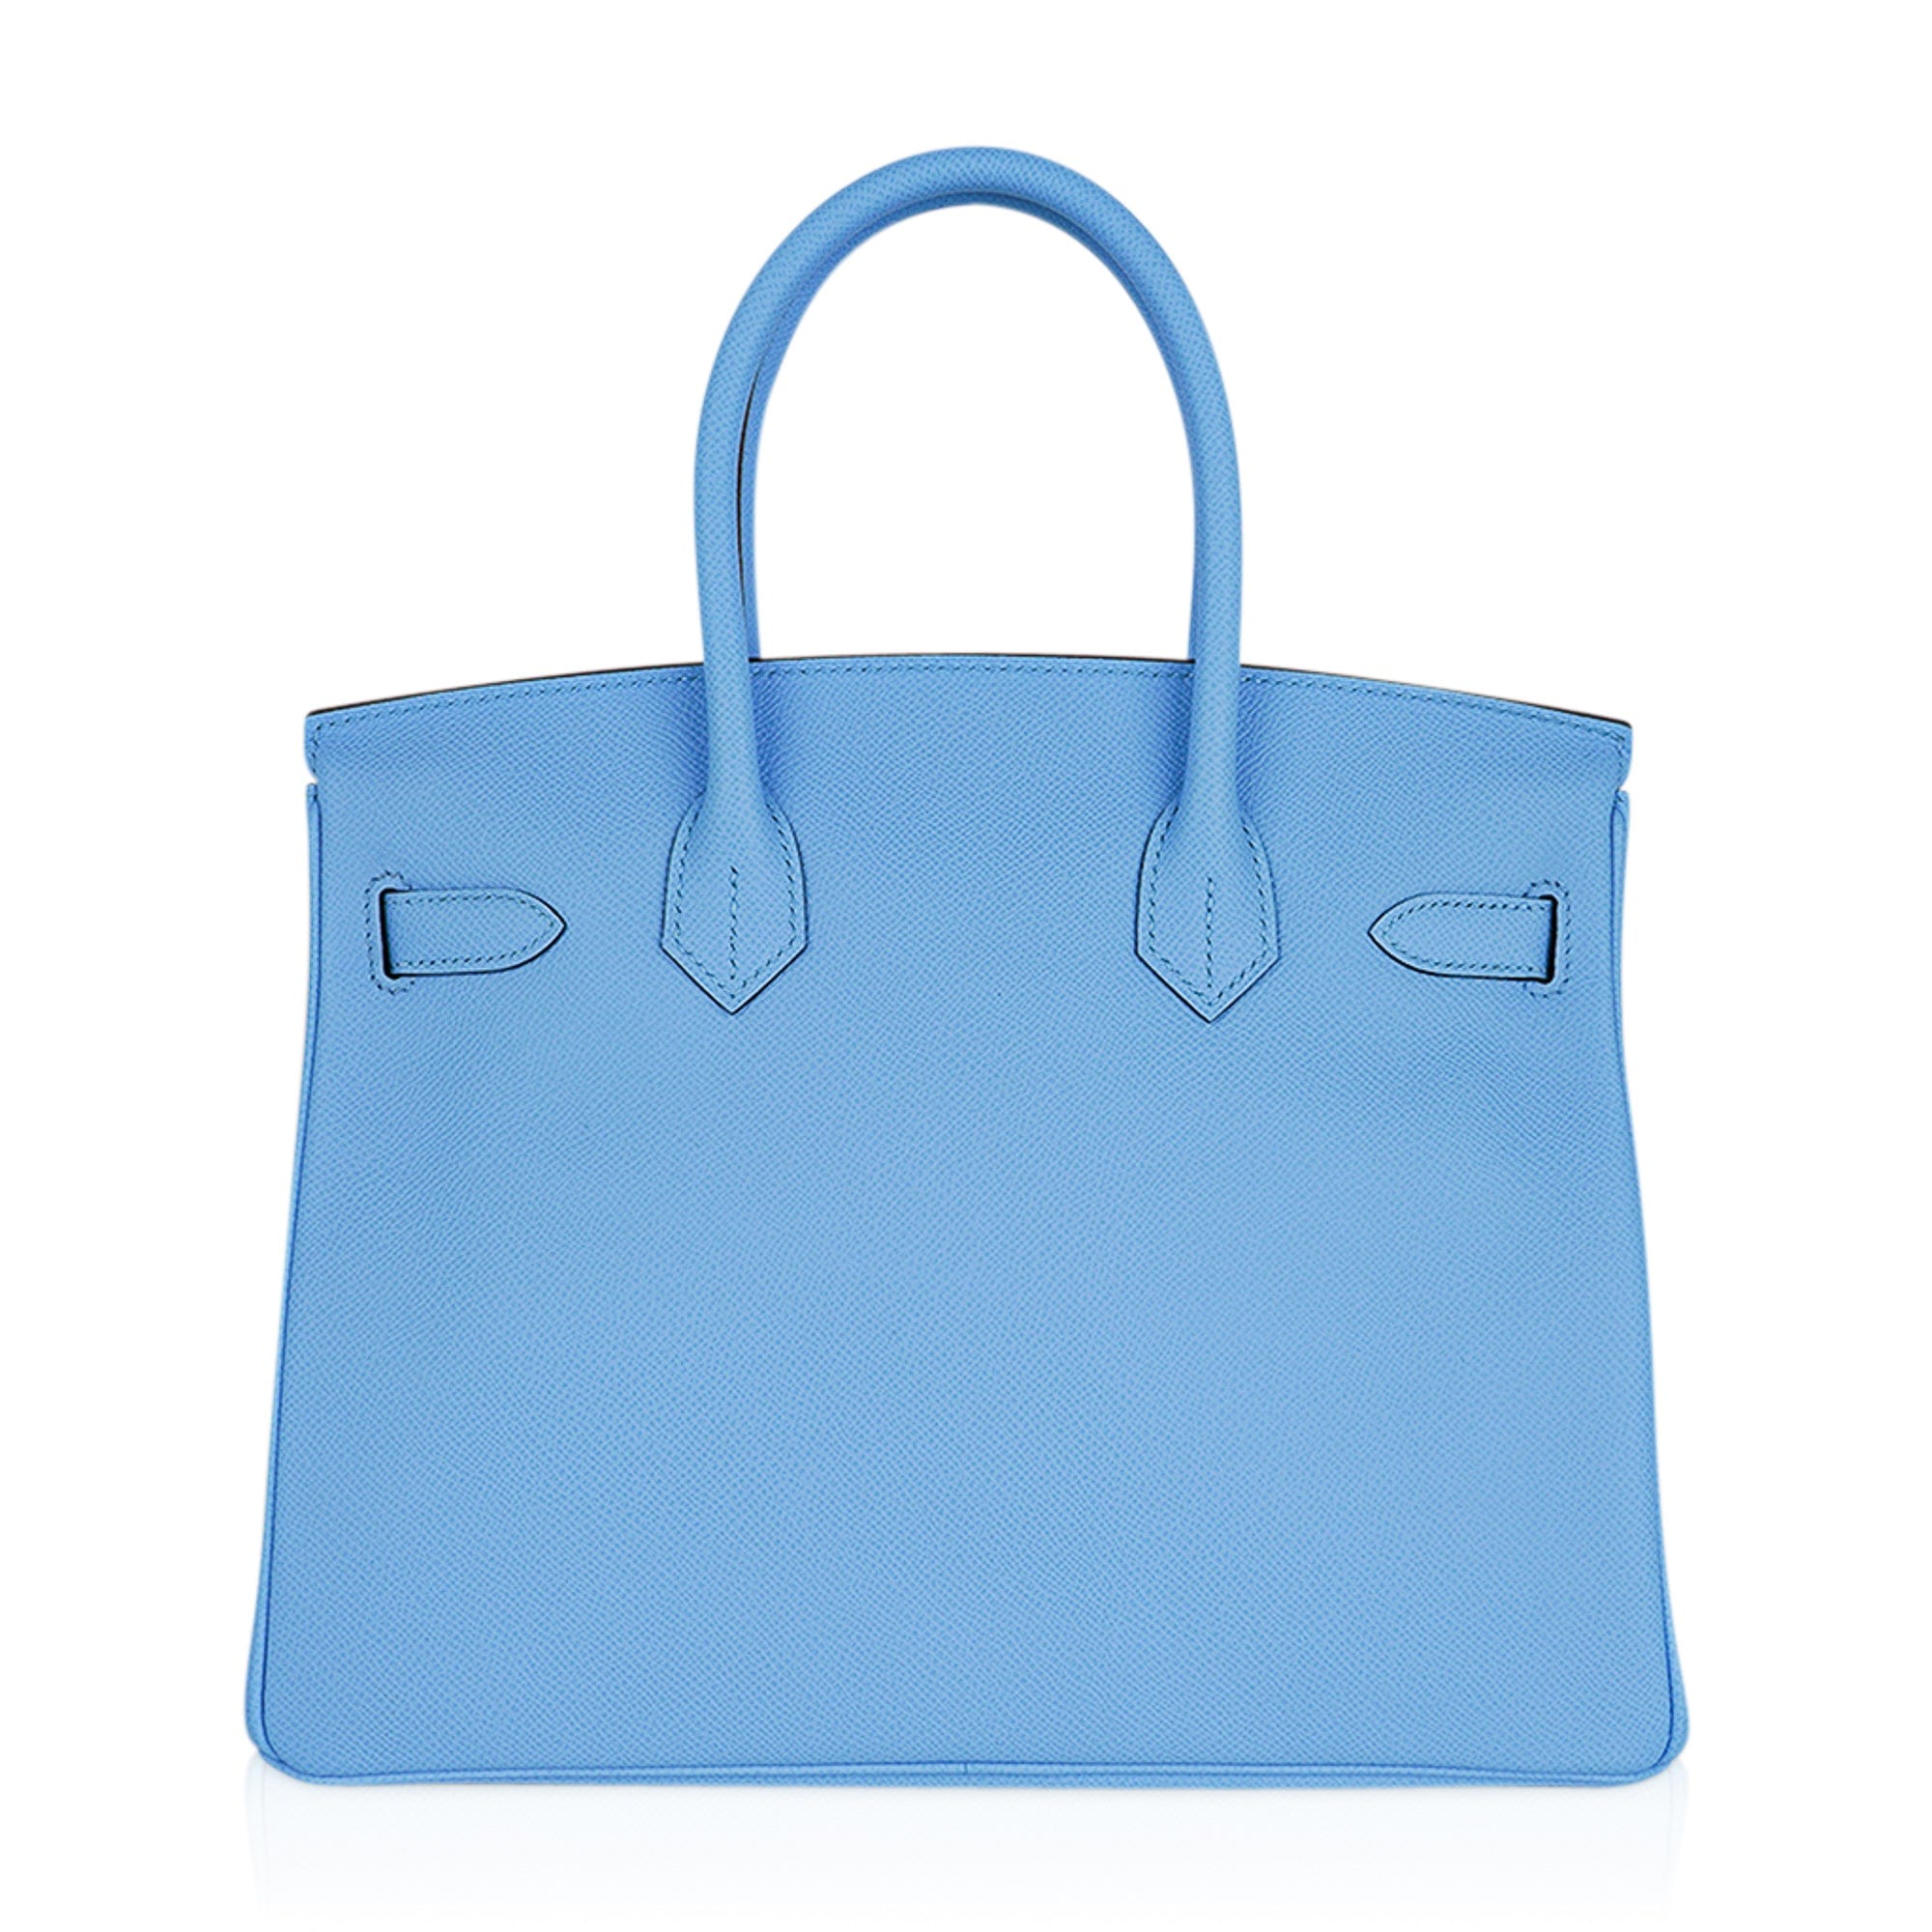 Sizes for Hermes Birkin Handbags 